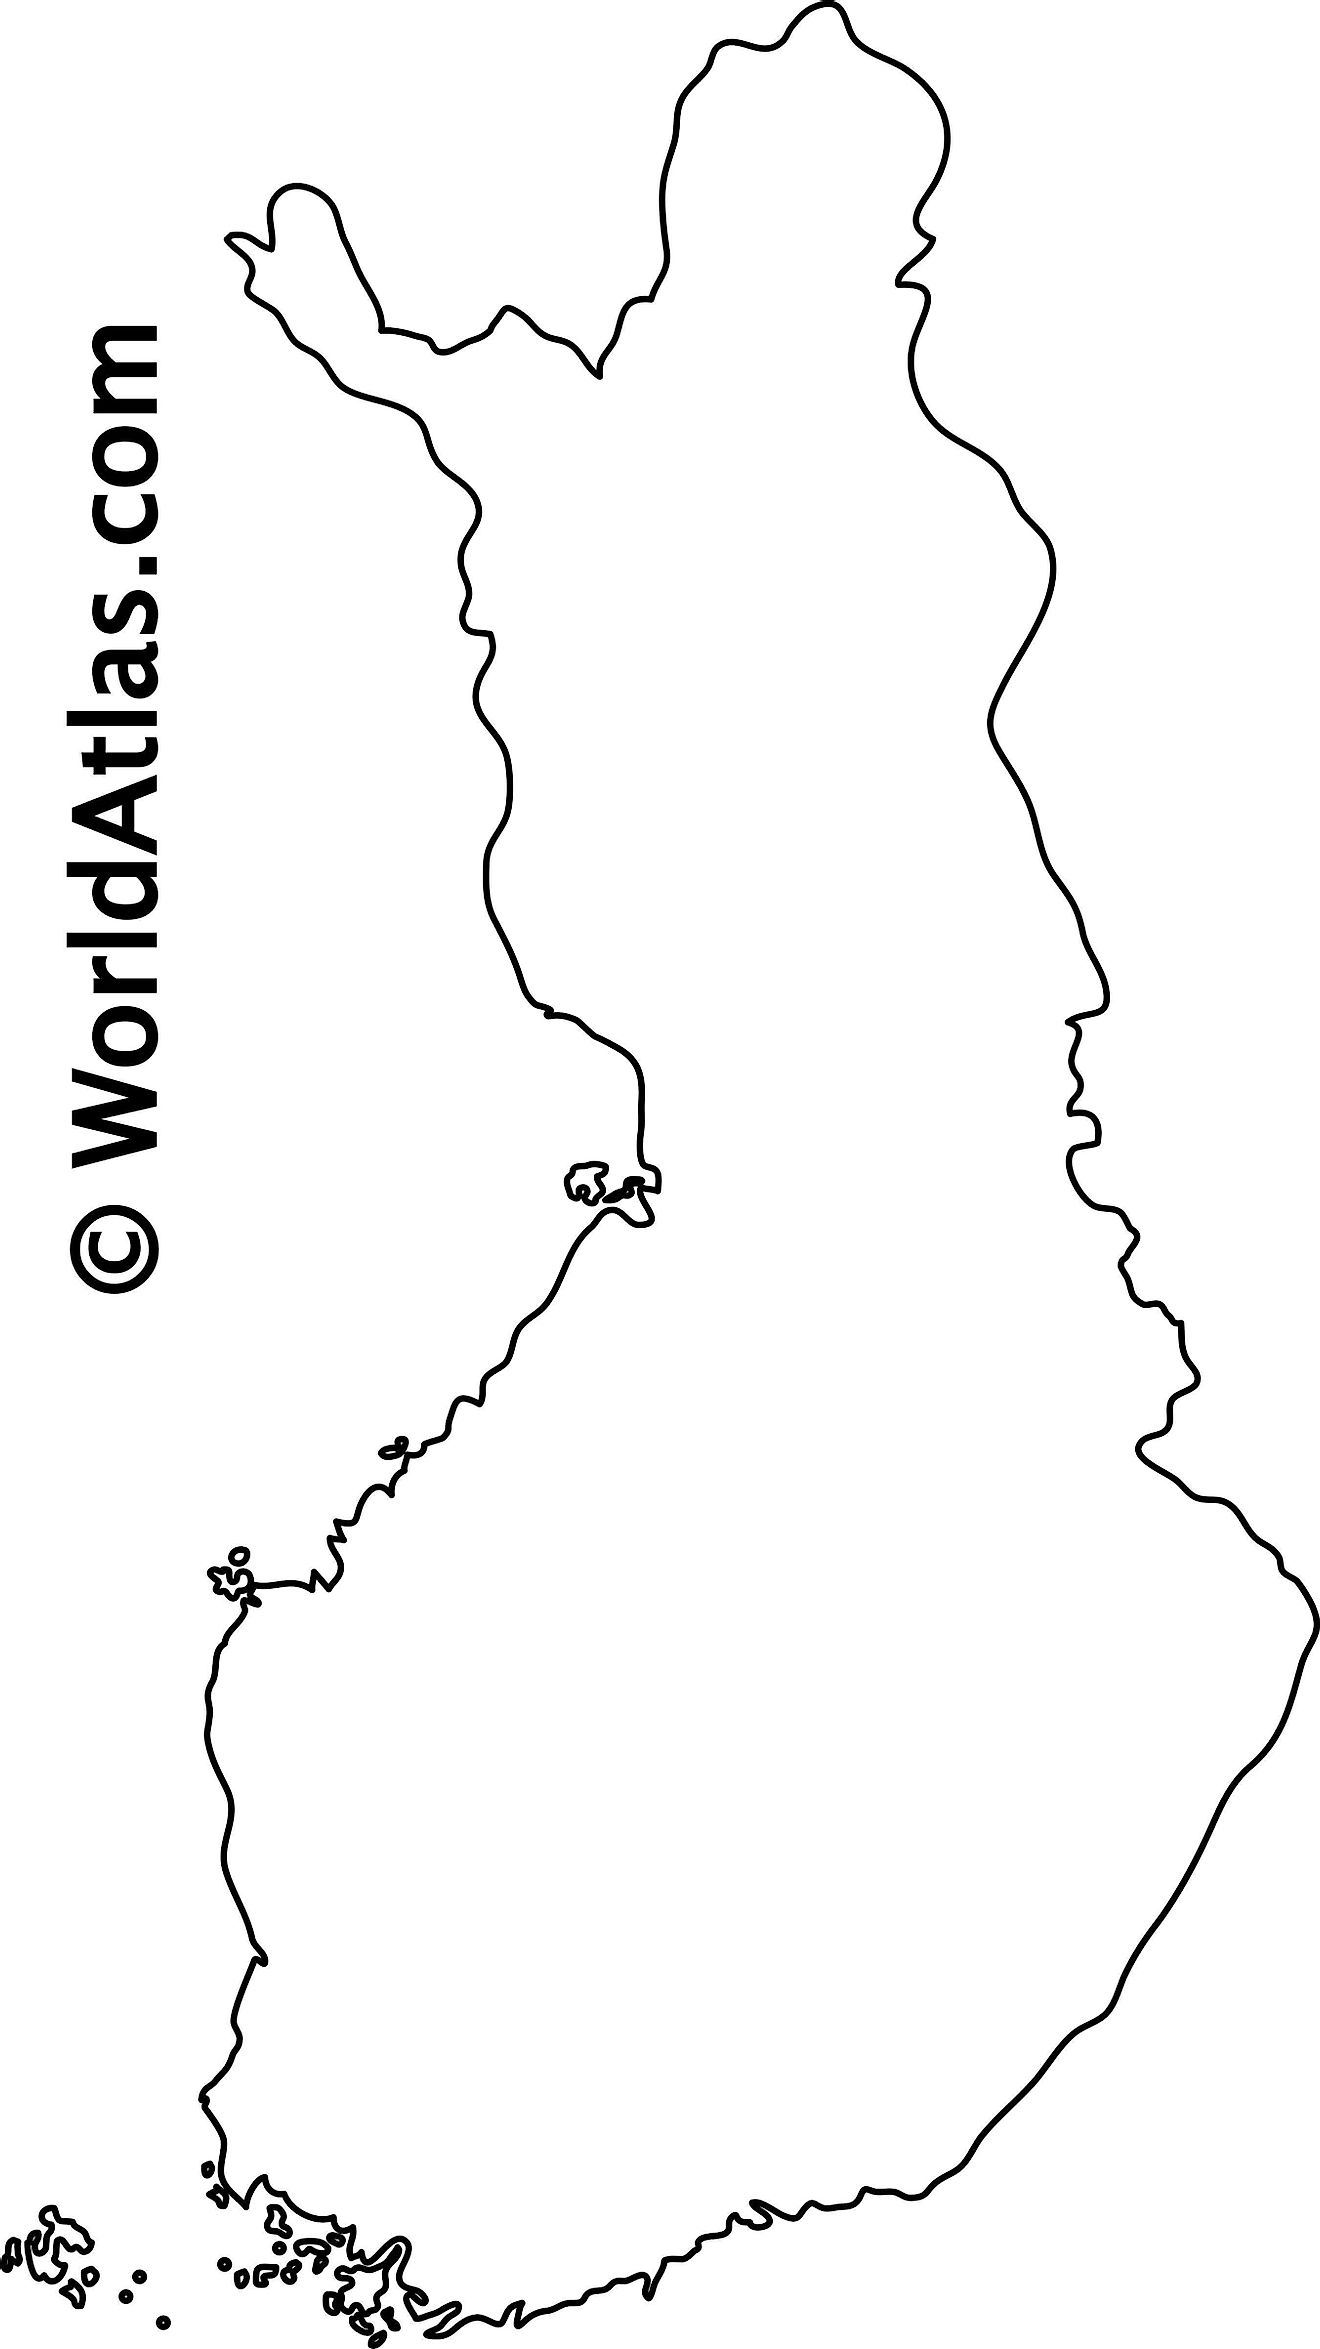 Mapa de contorno en blanco de Finlandia